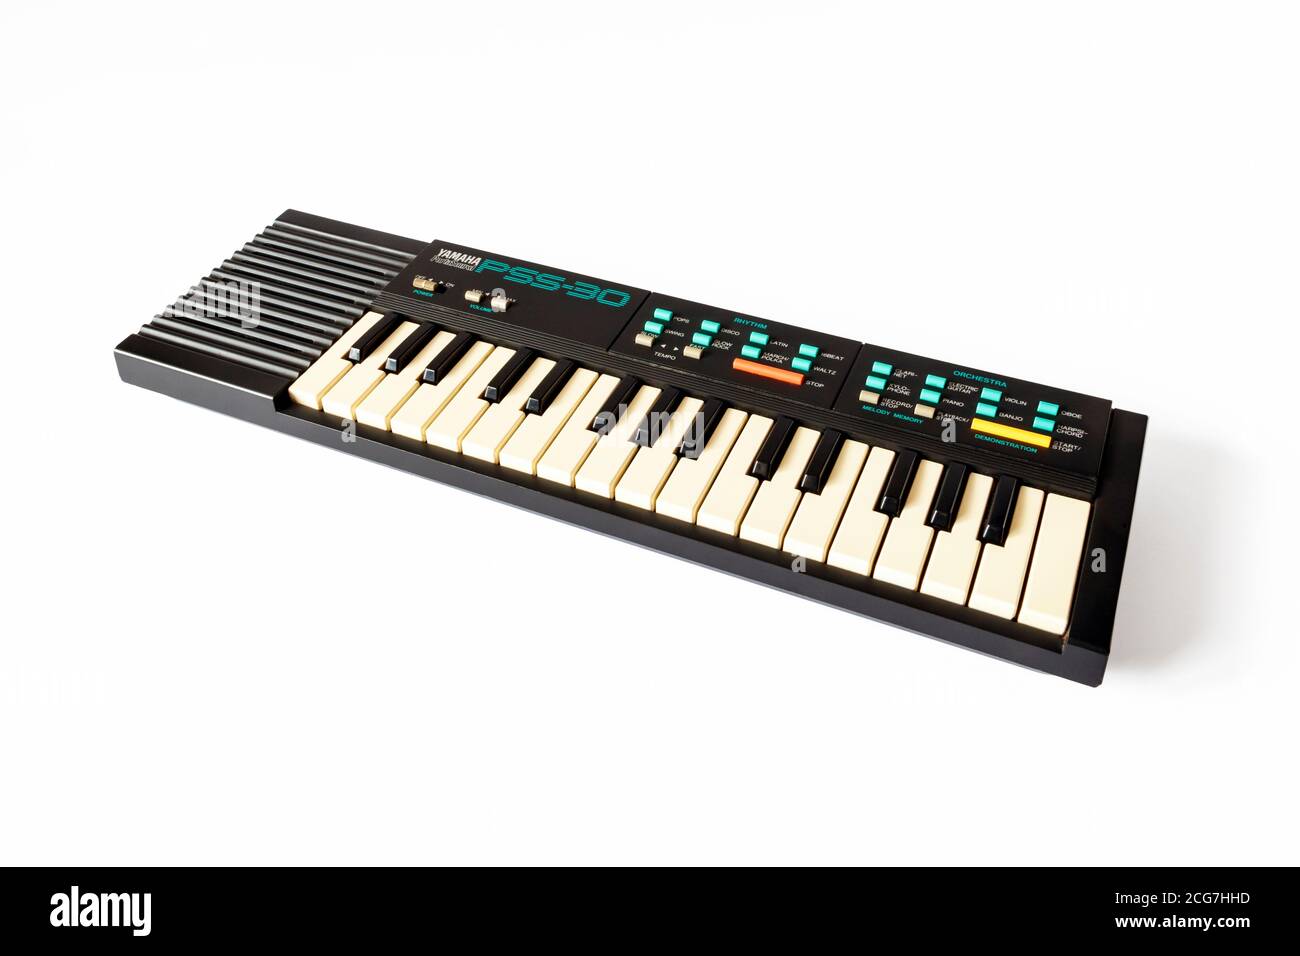 Un mini clavier musical électronique Yamaha PortaSound PSS-30 des années 80 isolé sur un fond blanc Banque D'Images